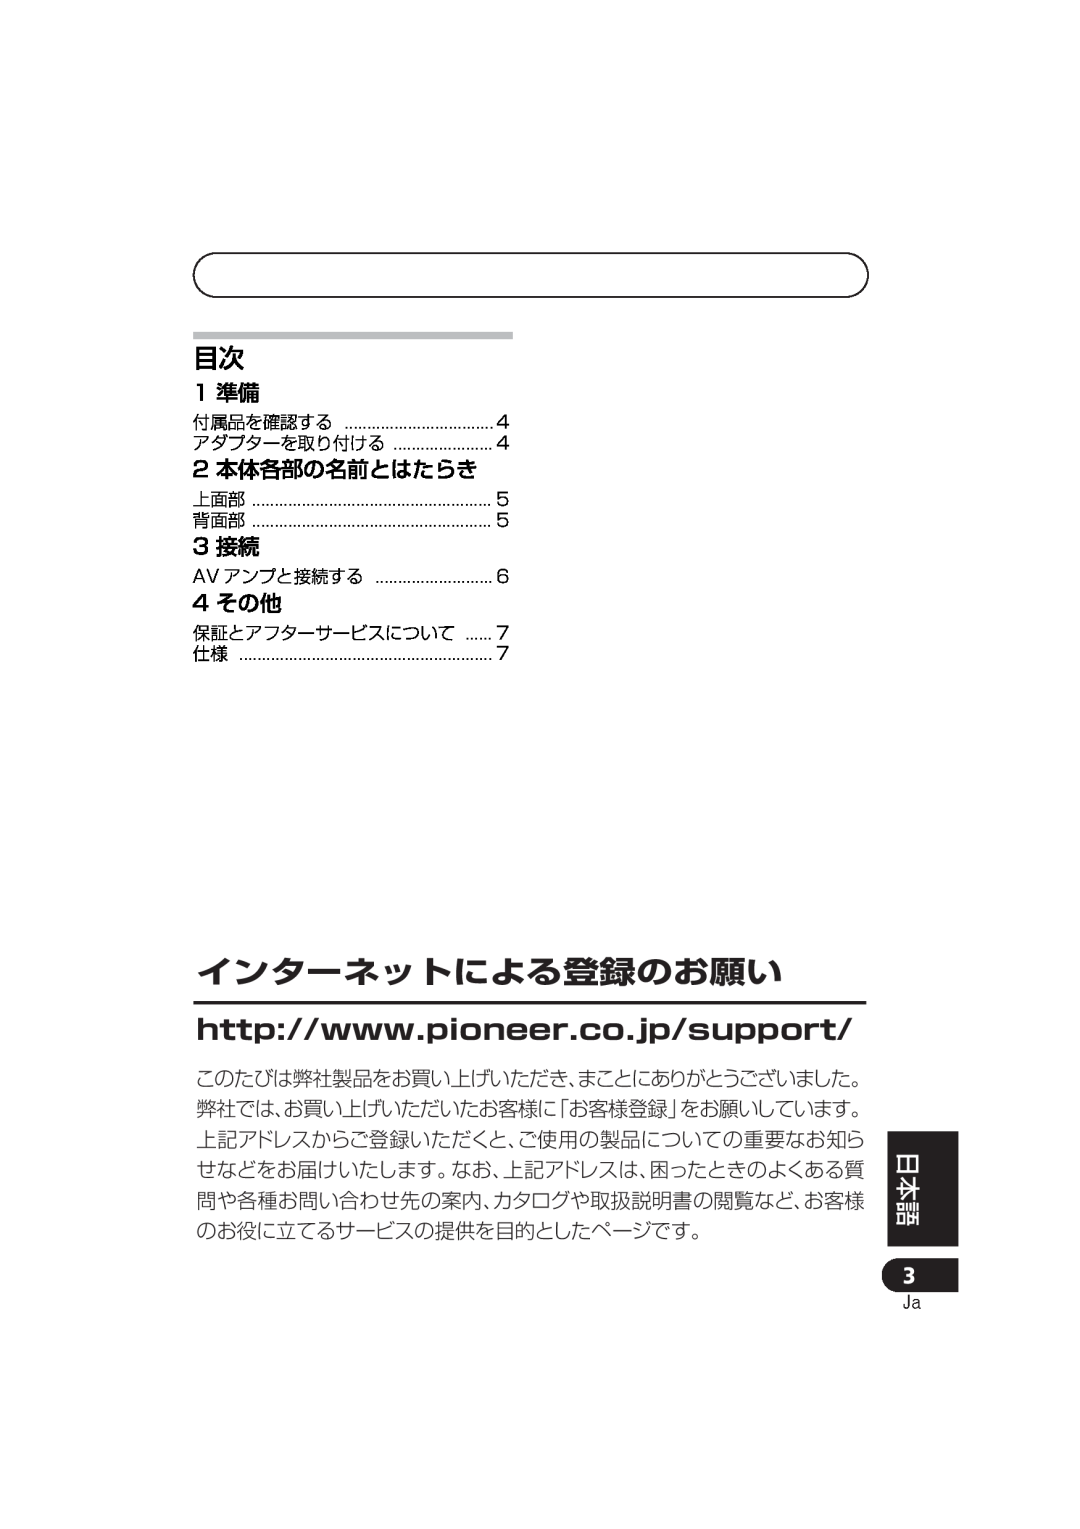 Pioneer IDK-80 manual 2 本体各部の名前とはたらき, 4 その他, インターネットによる登録のお願い, 日本 語, English Français Deutsch Italiano, 1 準備, 3 接続 